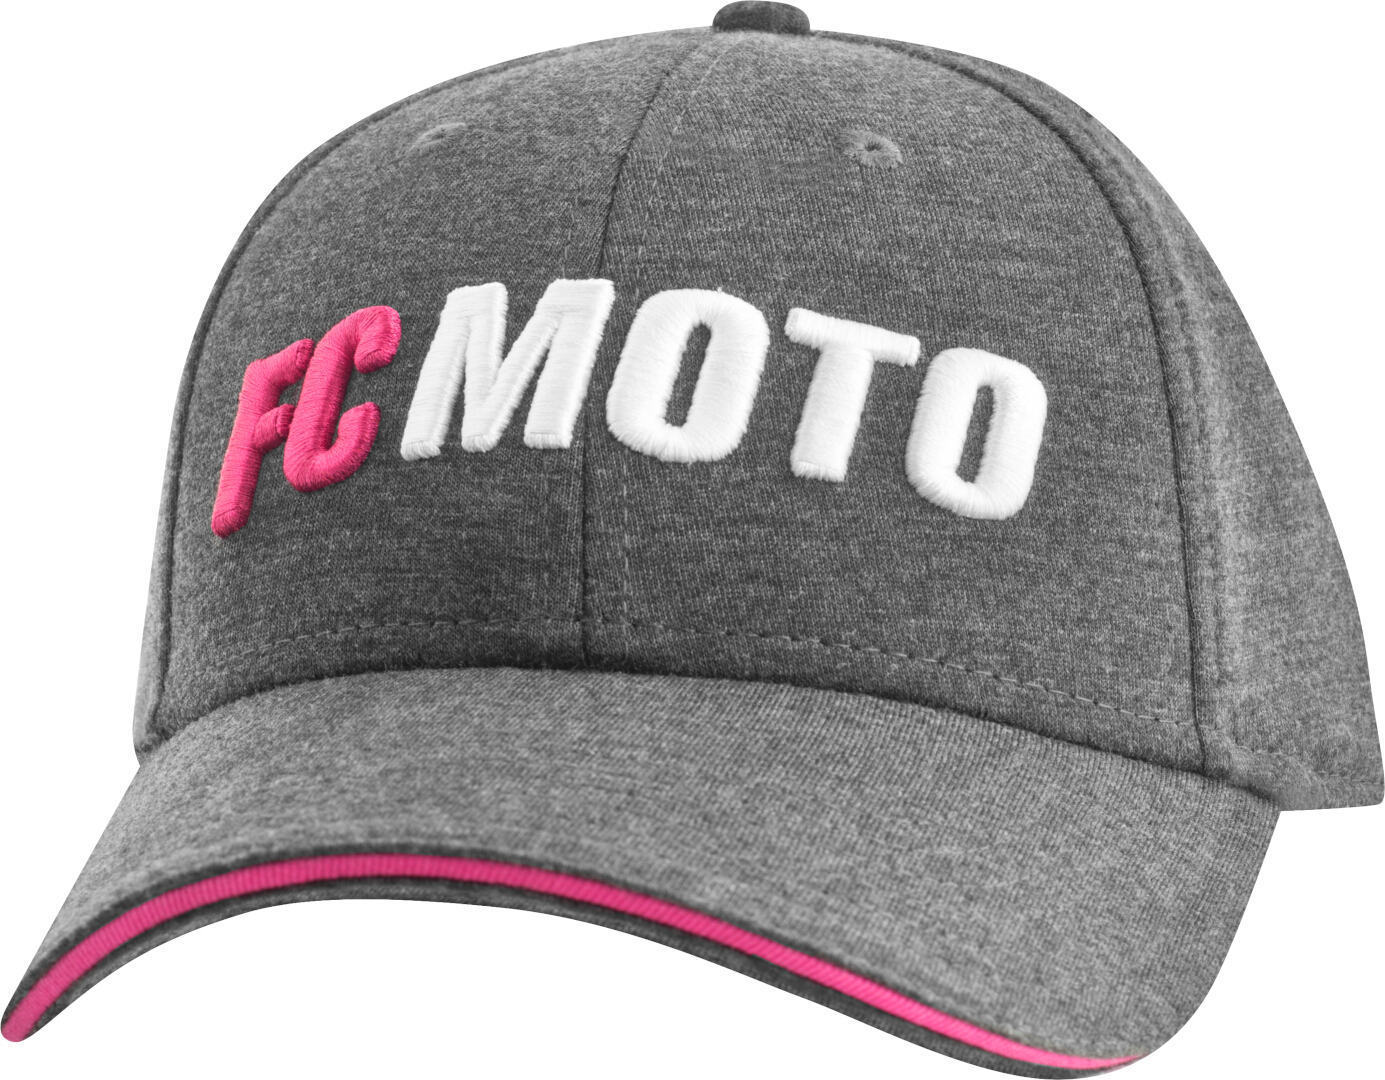 Кепка женская FC-Moto FCM-Crew, серый/розовый